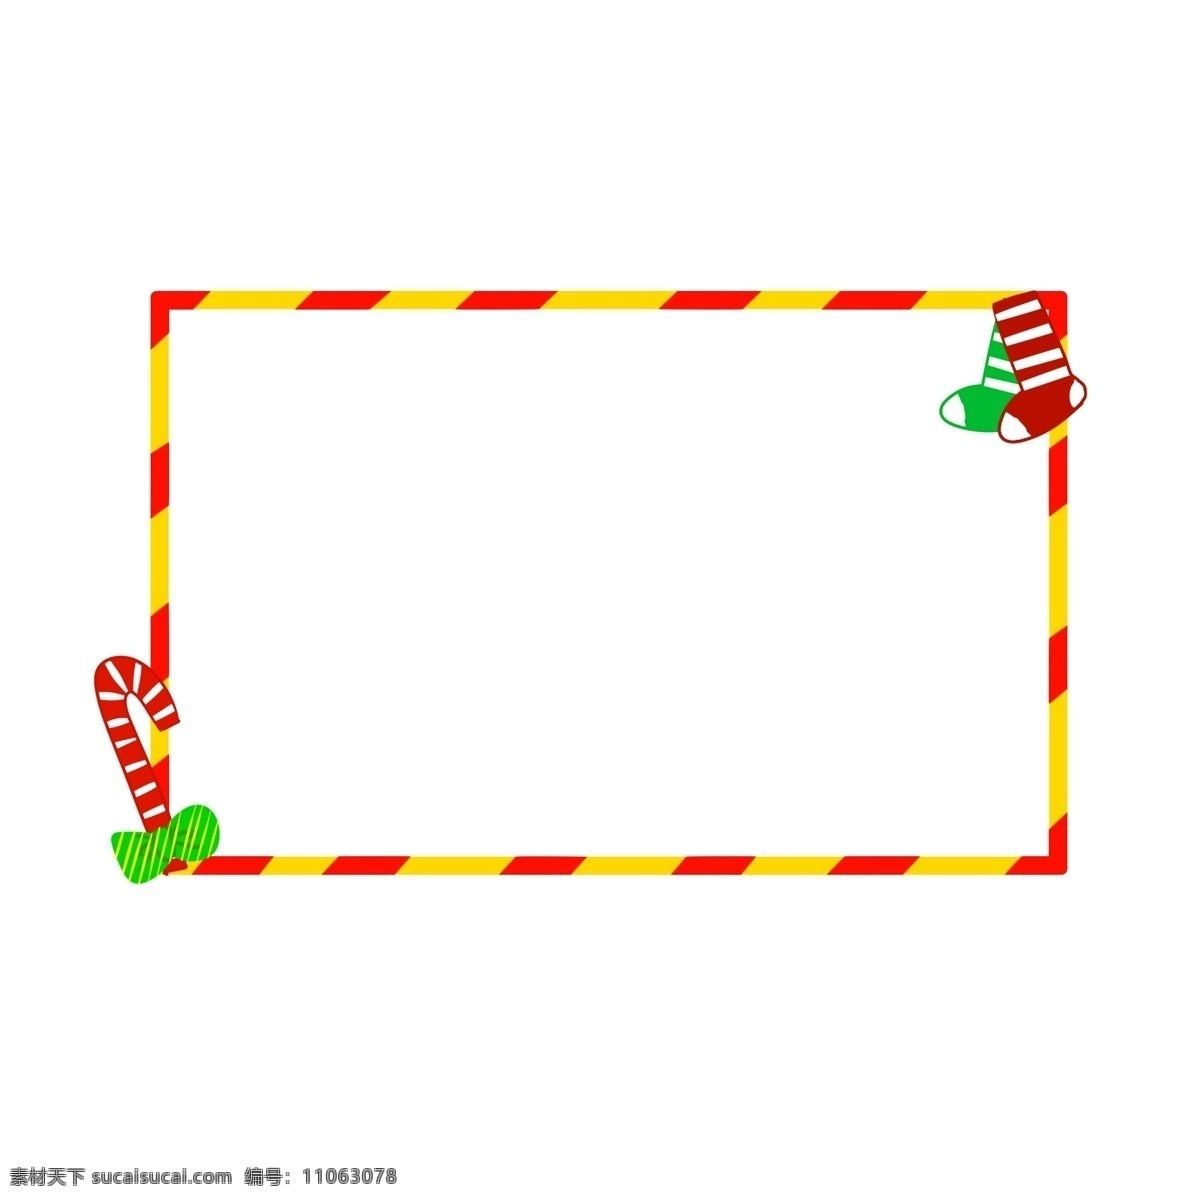 圣诞 圣诞节 夜 节日 喜庆 童趣 红 黄 条纹 装饰 长方形 边框 圣诞夜 红黄条纹边框 长方形边框 条纹袜子